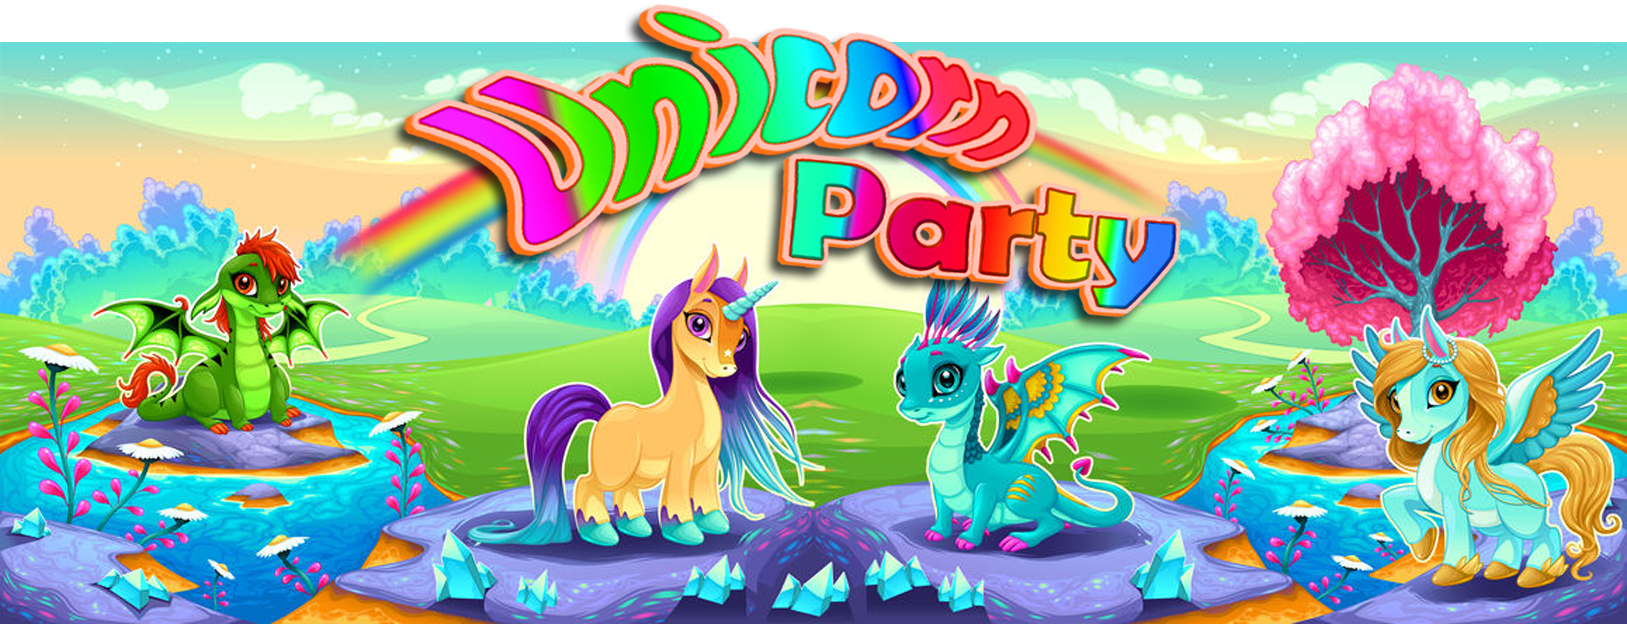 Unicorn party image